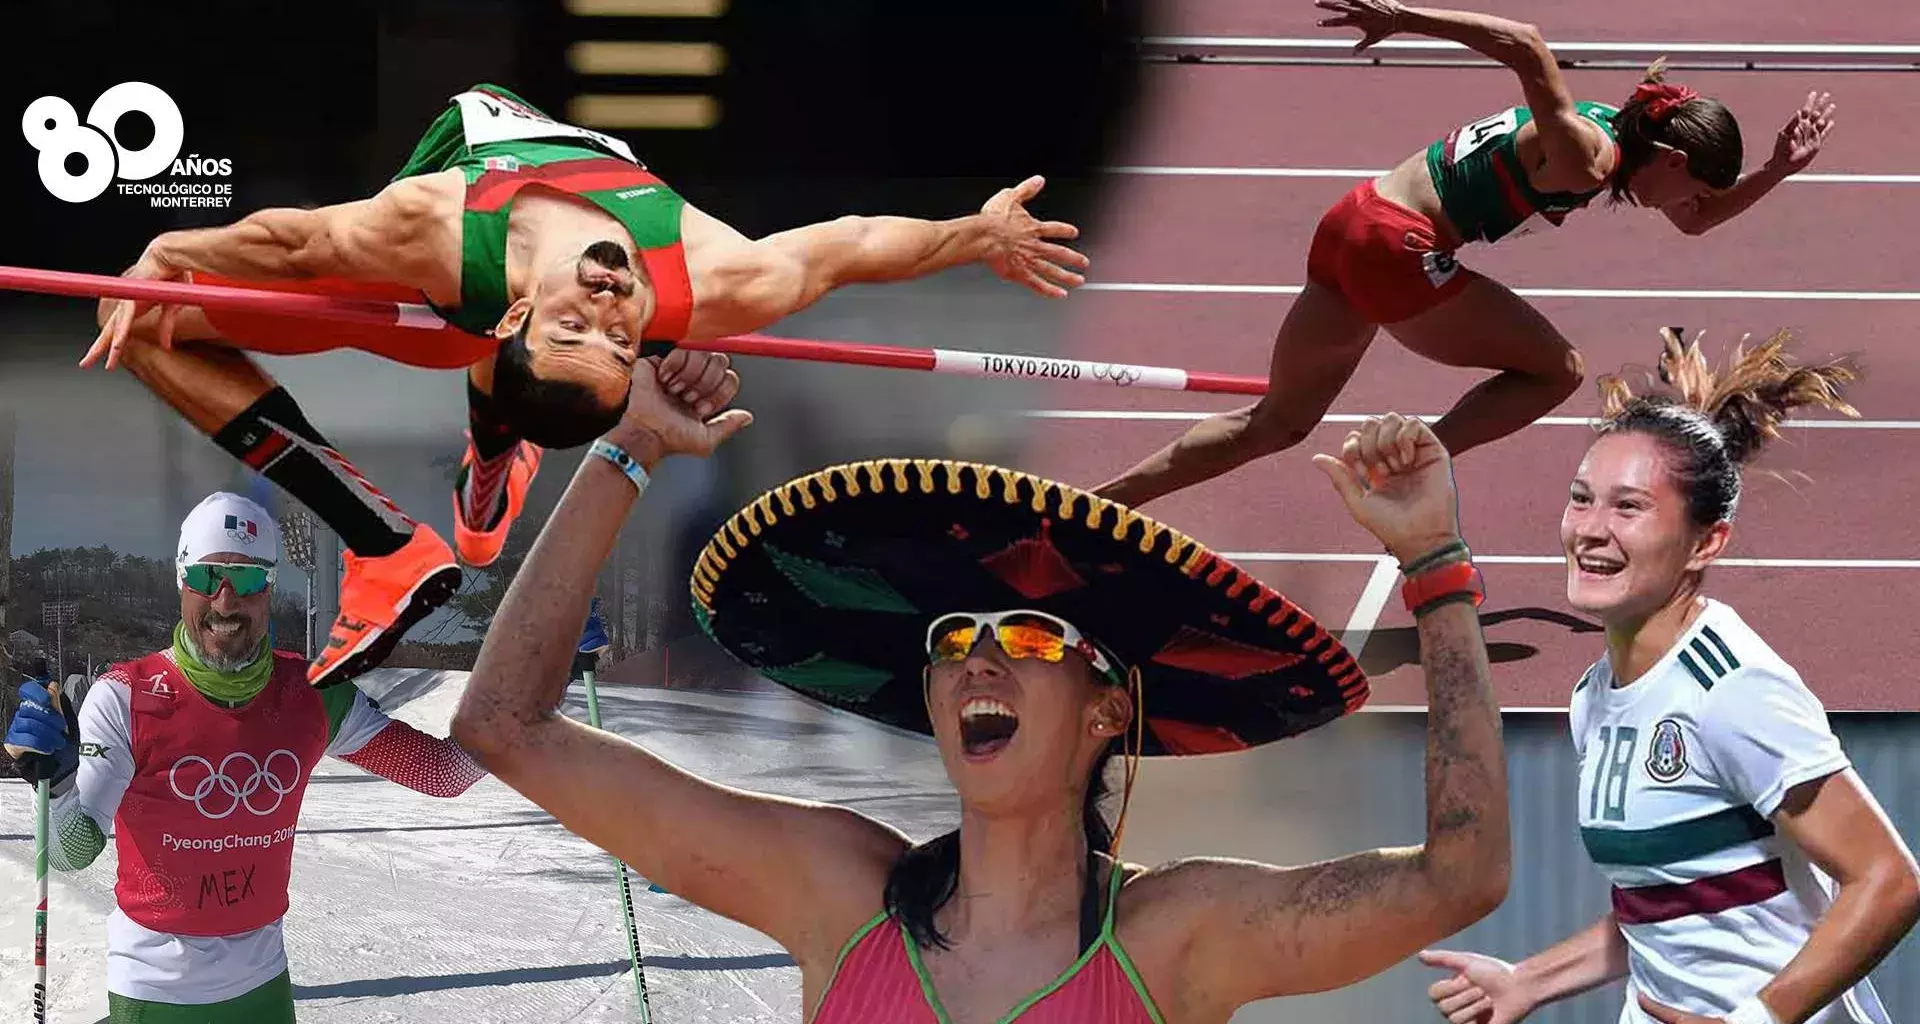 Luis Rivera, Paola Morán, Bibiana Candelas, entre otros deportistas del Tec que han representado a México en diversas disciplinas deportivas